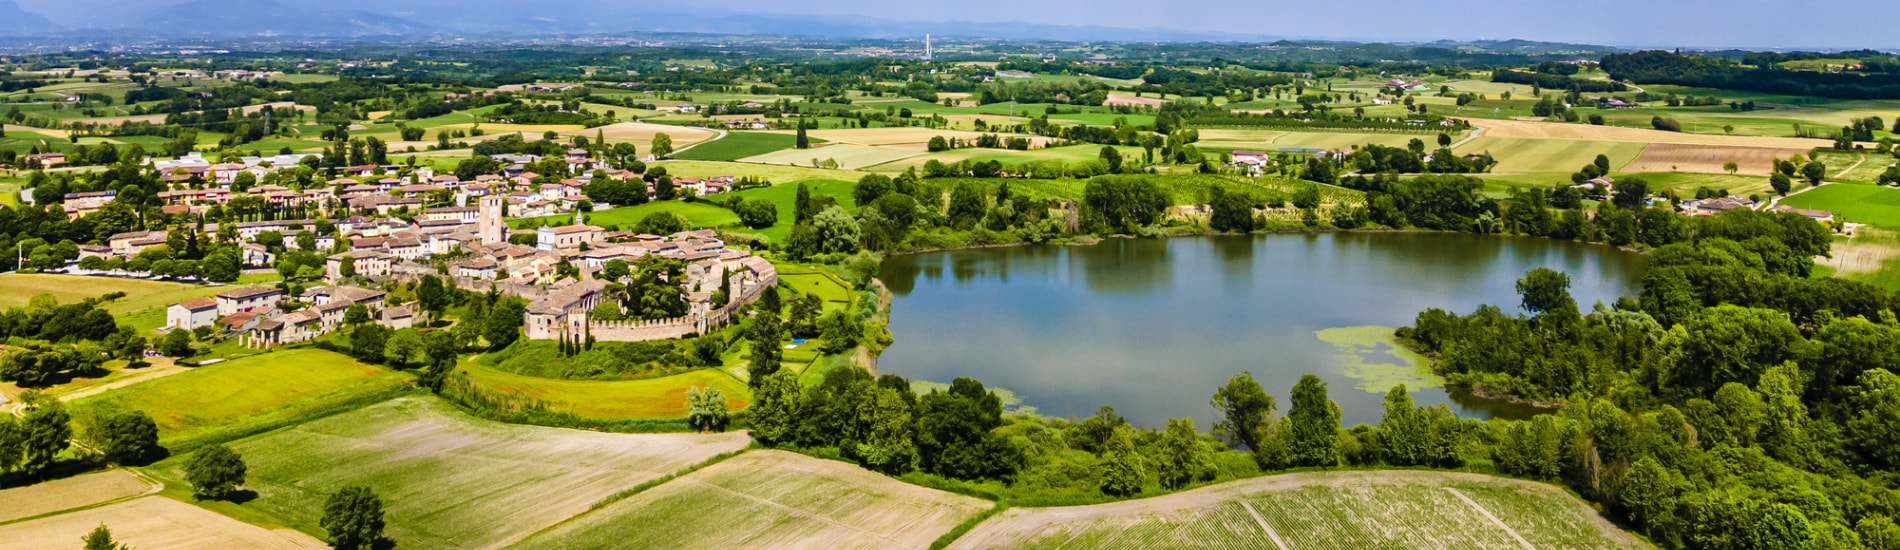 Castellaro Lagusello e il suo lago, Lombardia